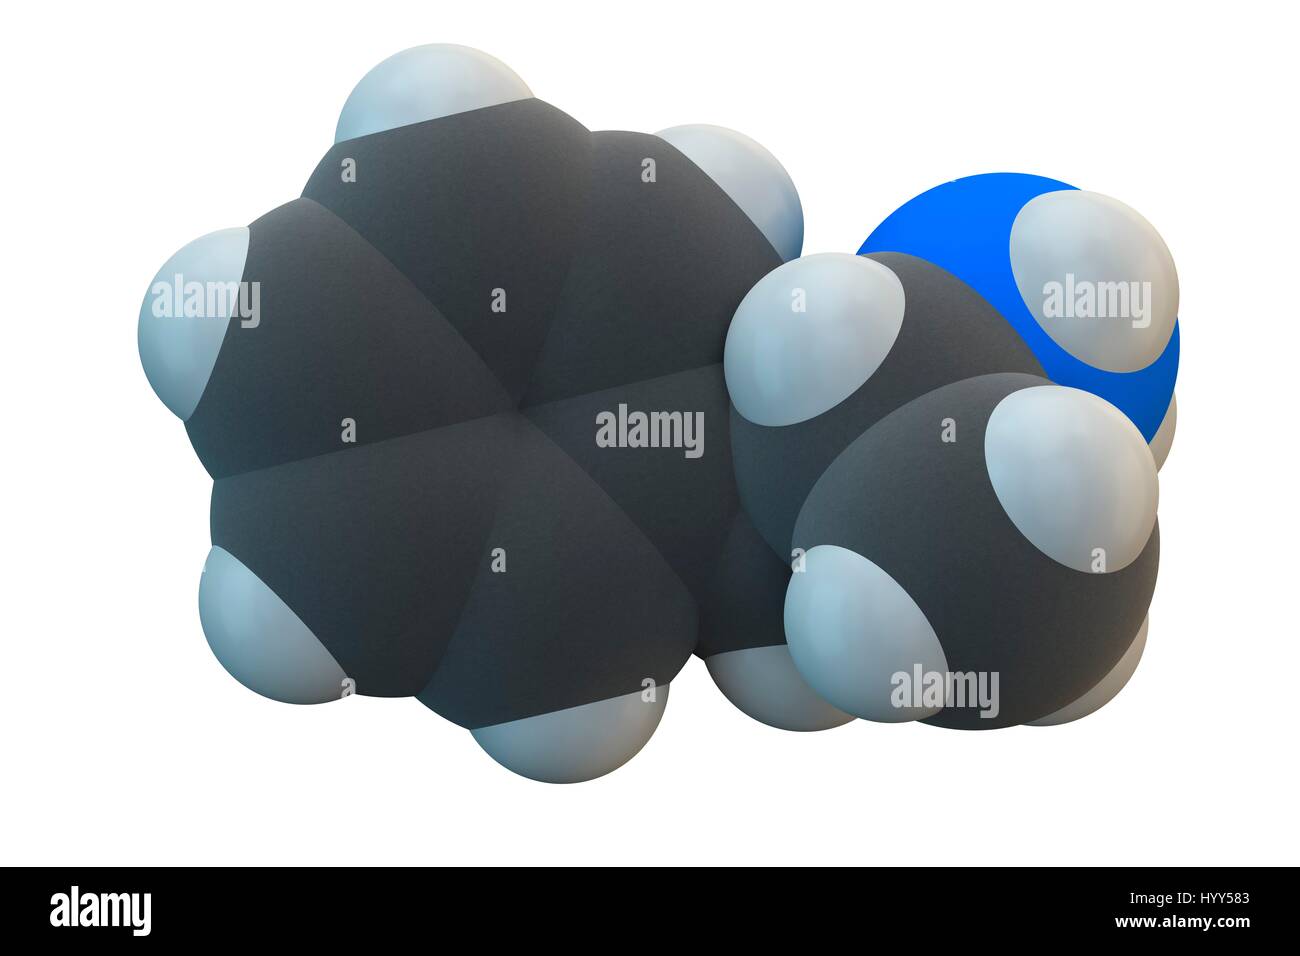 Amphetamin (Speed) Stimulans Wirkstoffmolekül. Chemische Formel ist C9H13N. Atome werden als Kugeln dargestellt: Kohlenstoff (grau), Wasserstoff (weiß), Stickstoff (blau). Abbildung. Stockfoto